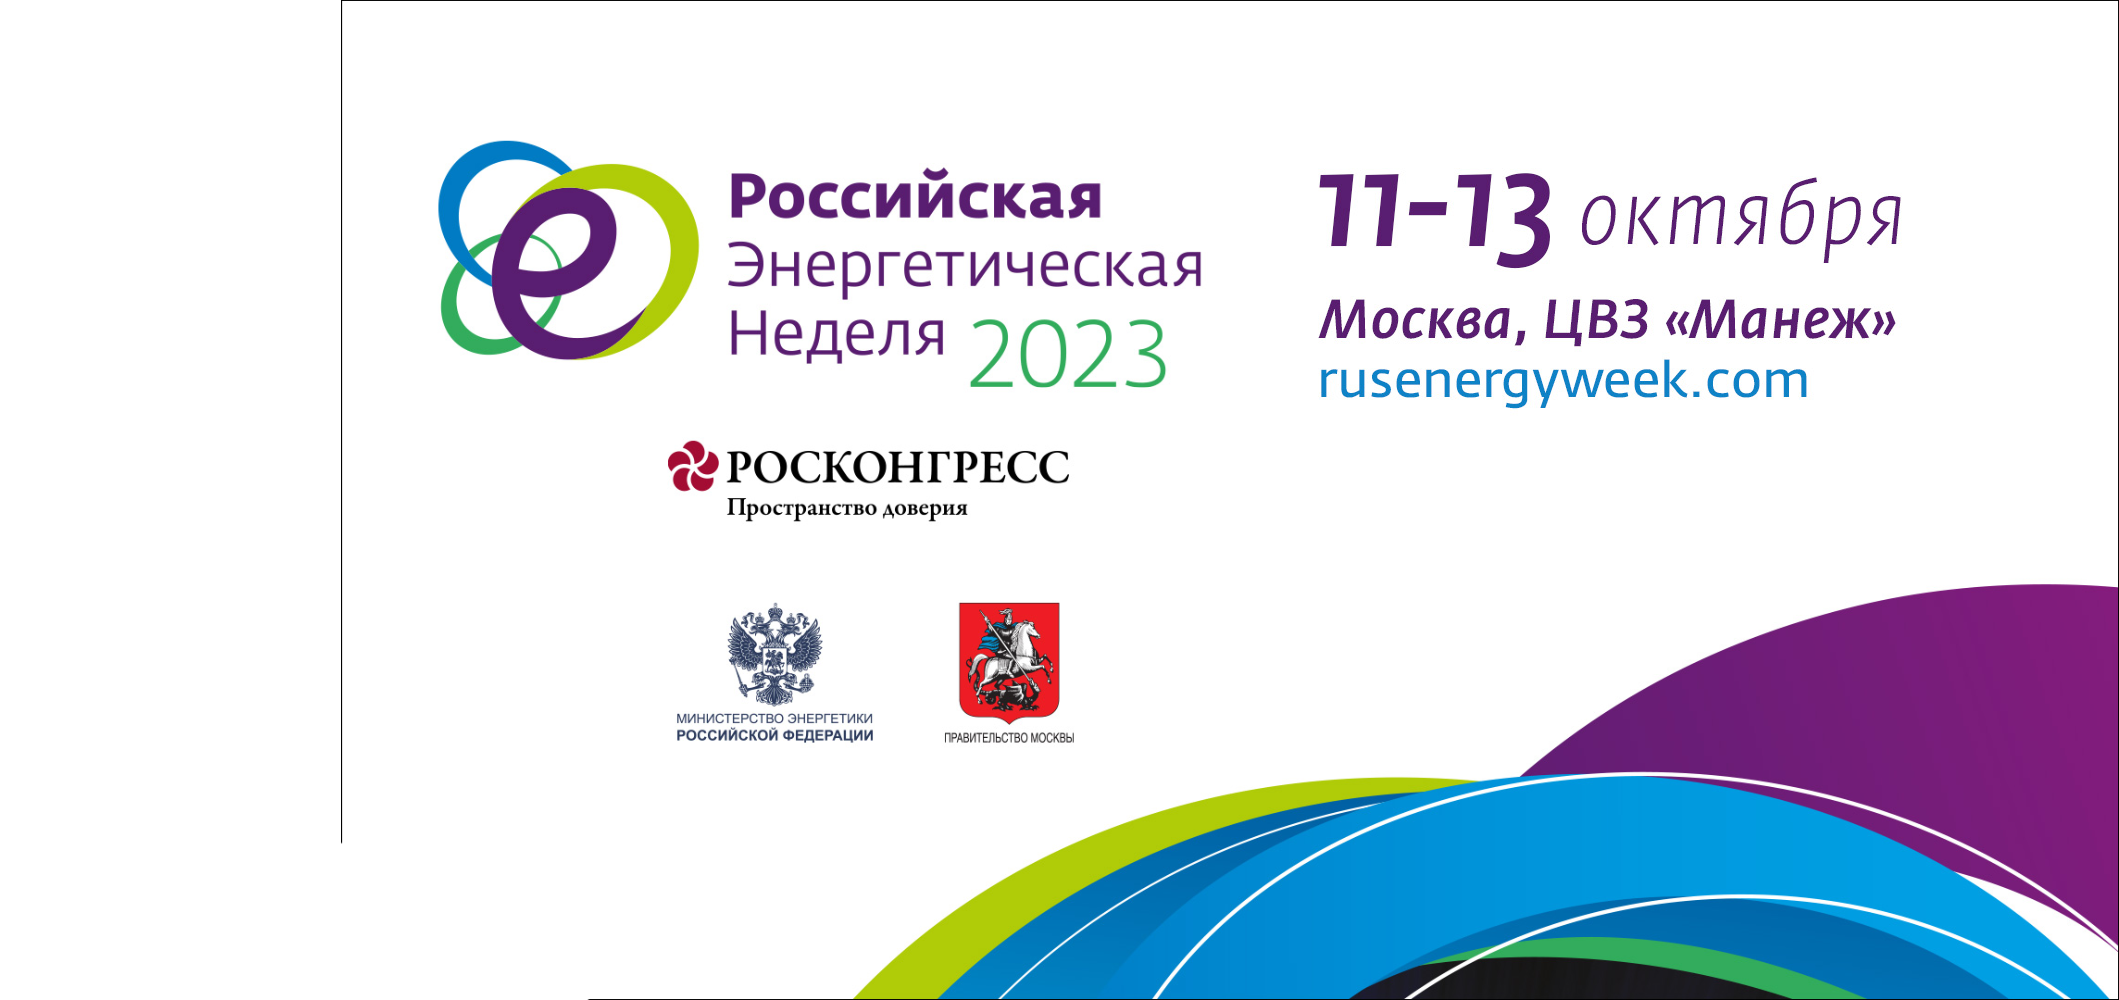 Российская энергетическая неделя 2023 пройдет с 11 по 13 октября в Москве, ЦВЗ «Манеж»